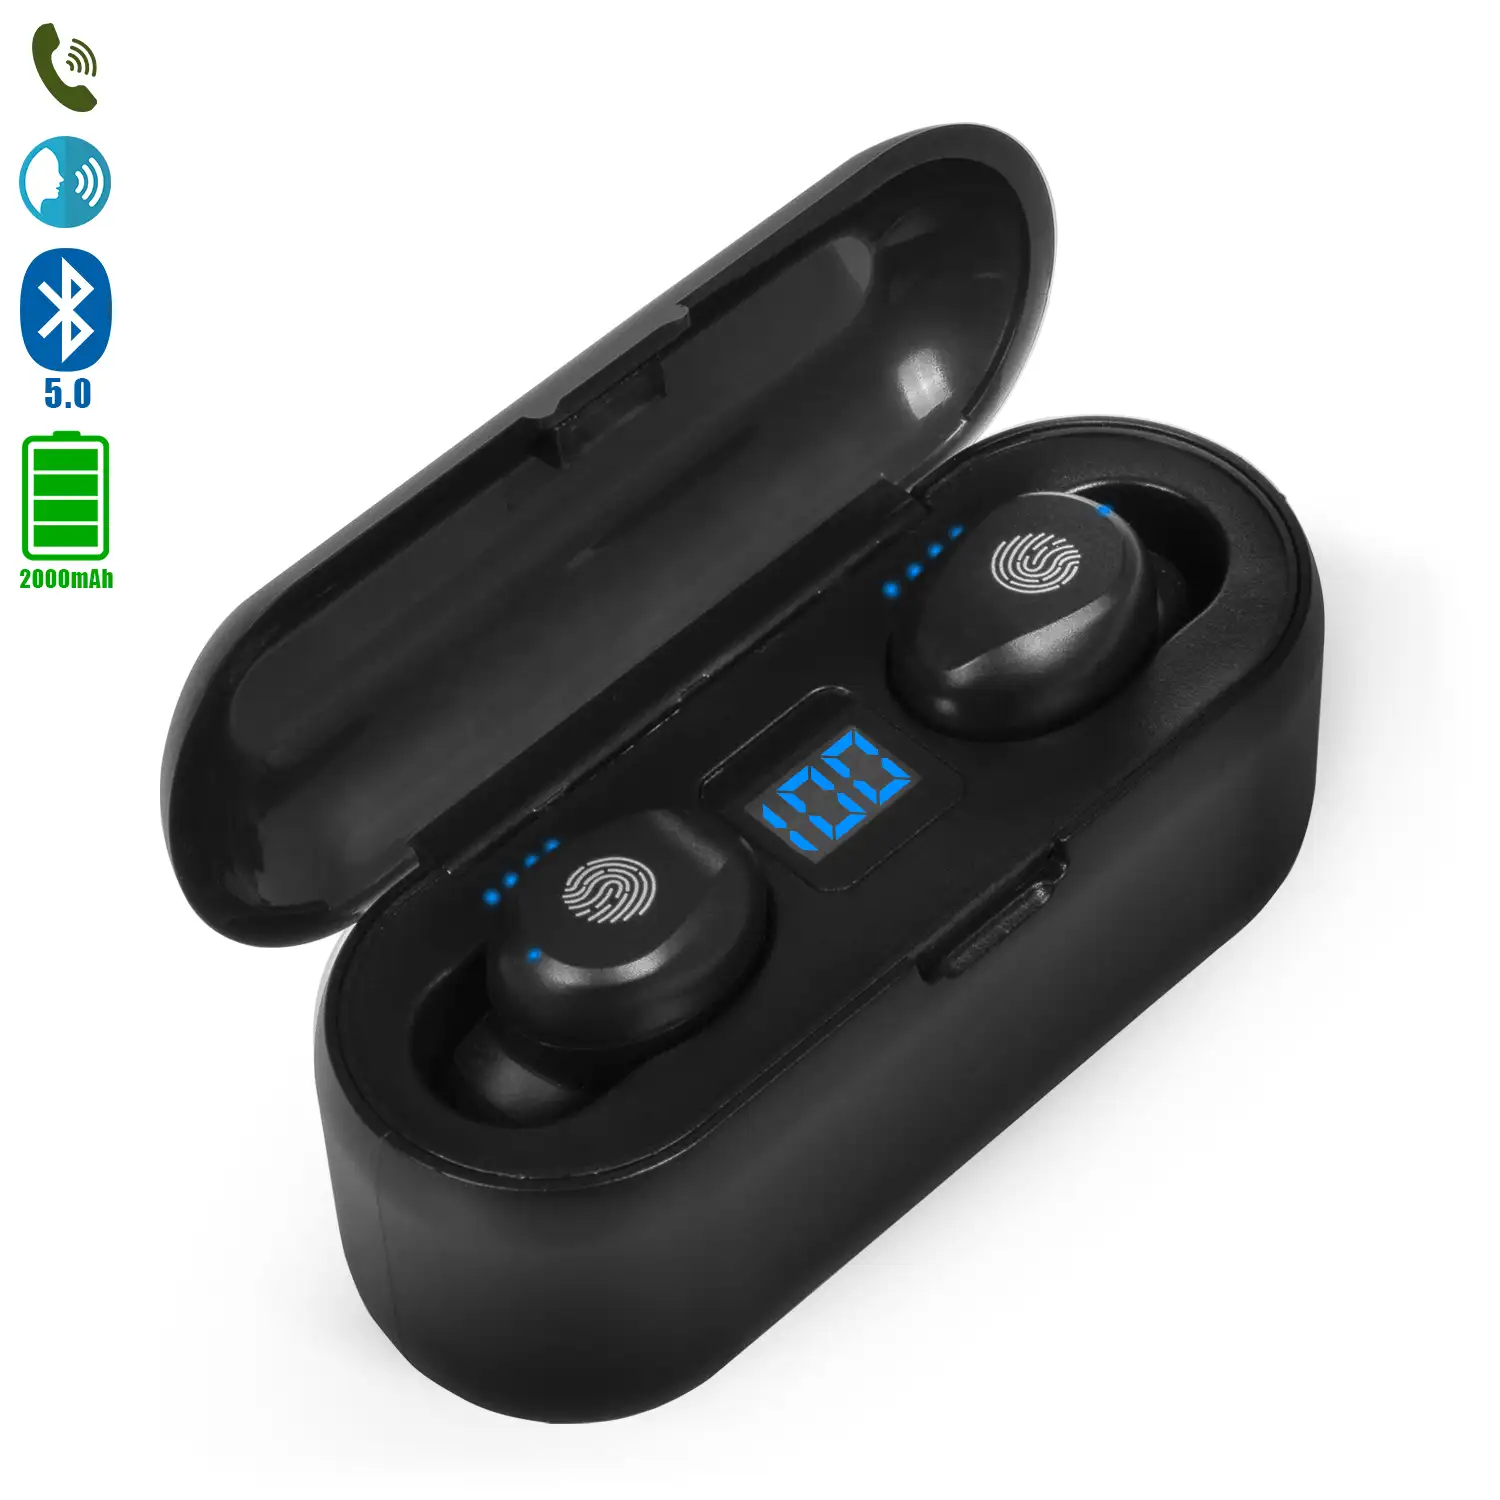 Auriculares TWS F9 Bluetooth 5.0 táctil con base de carga powerbank con indicador de carga interna y de auriculares.